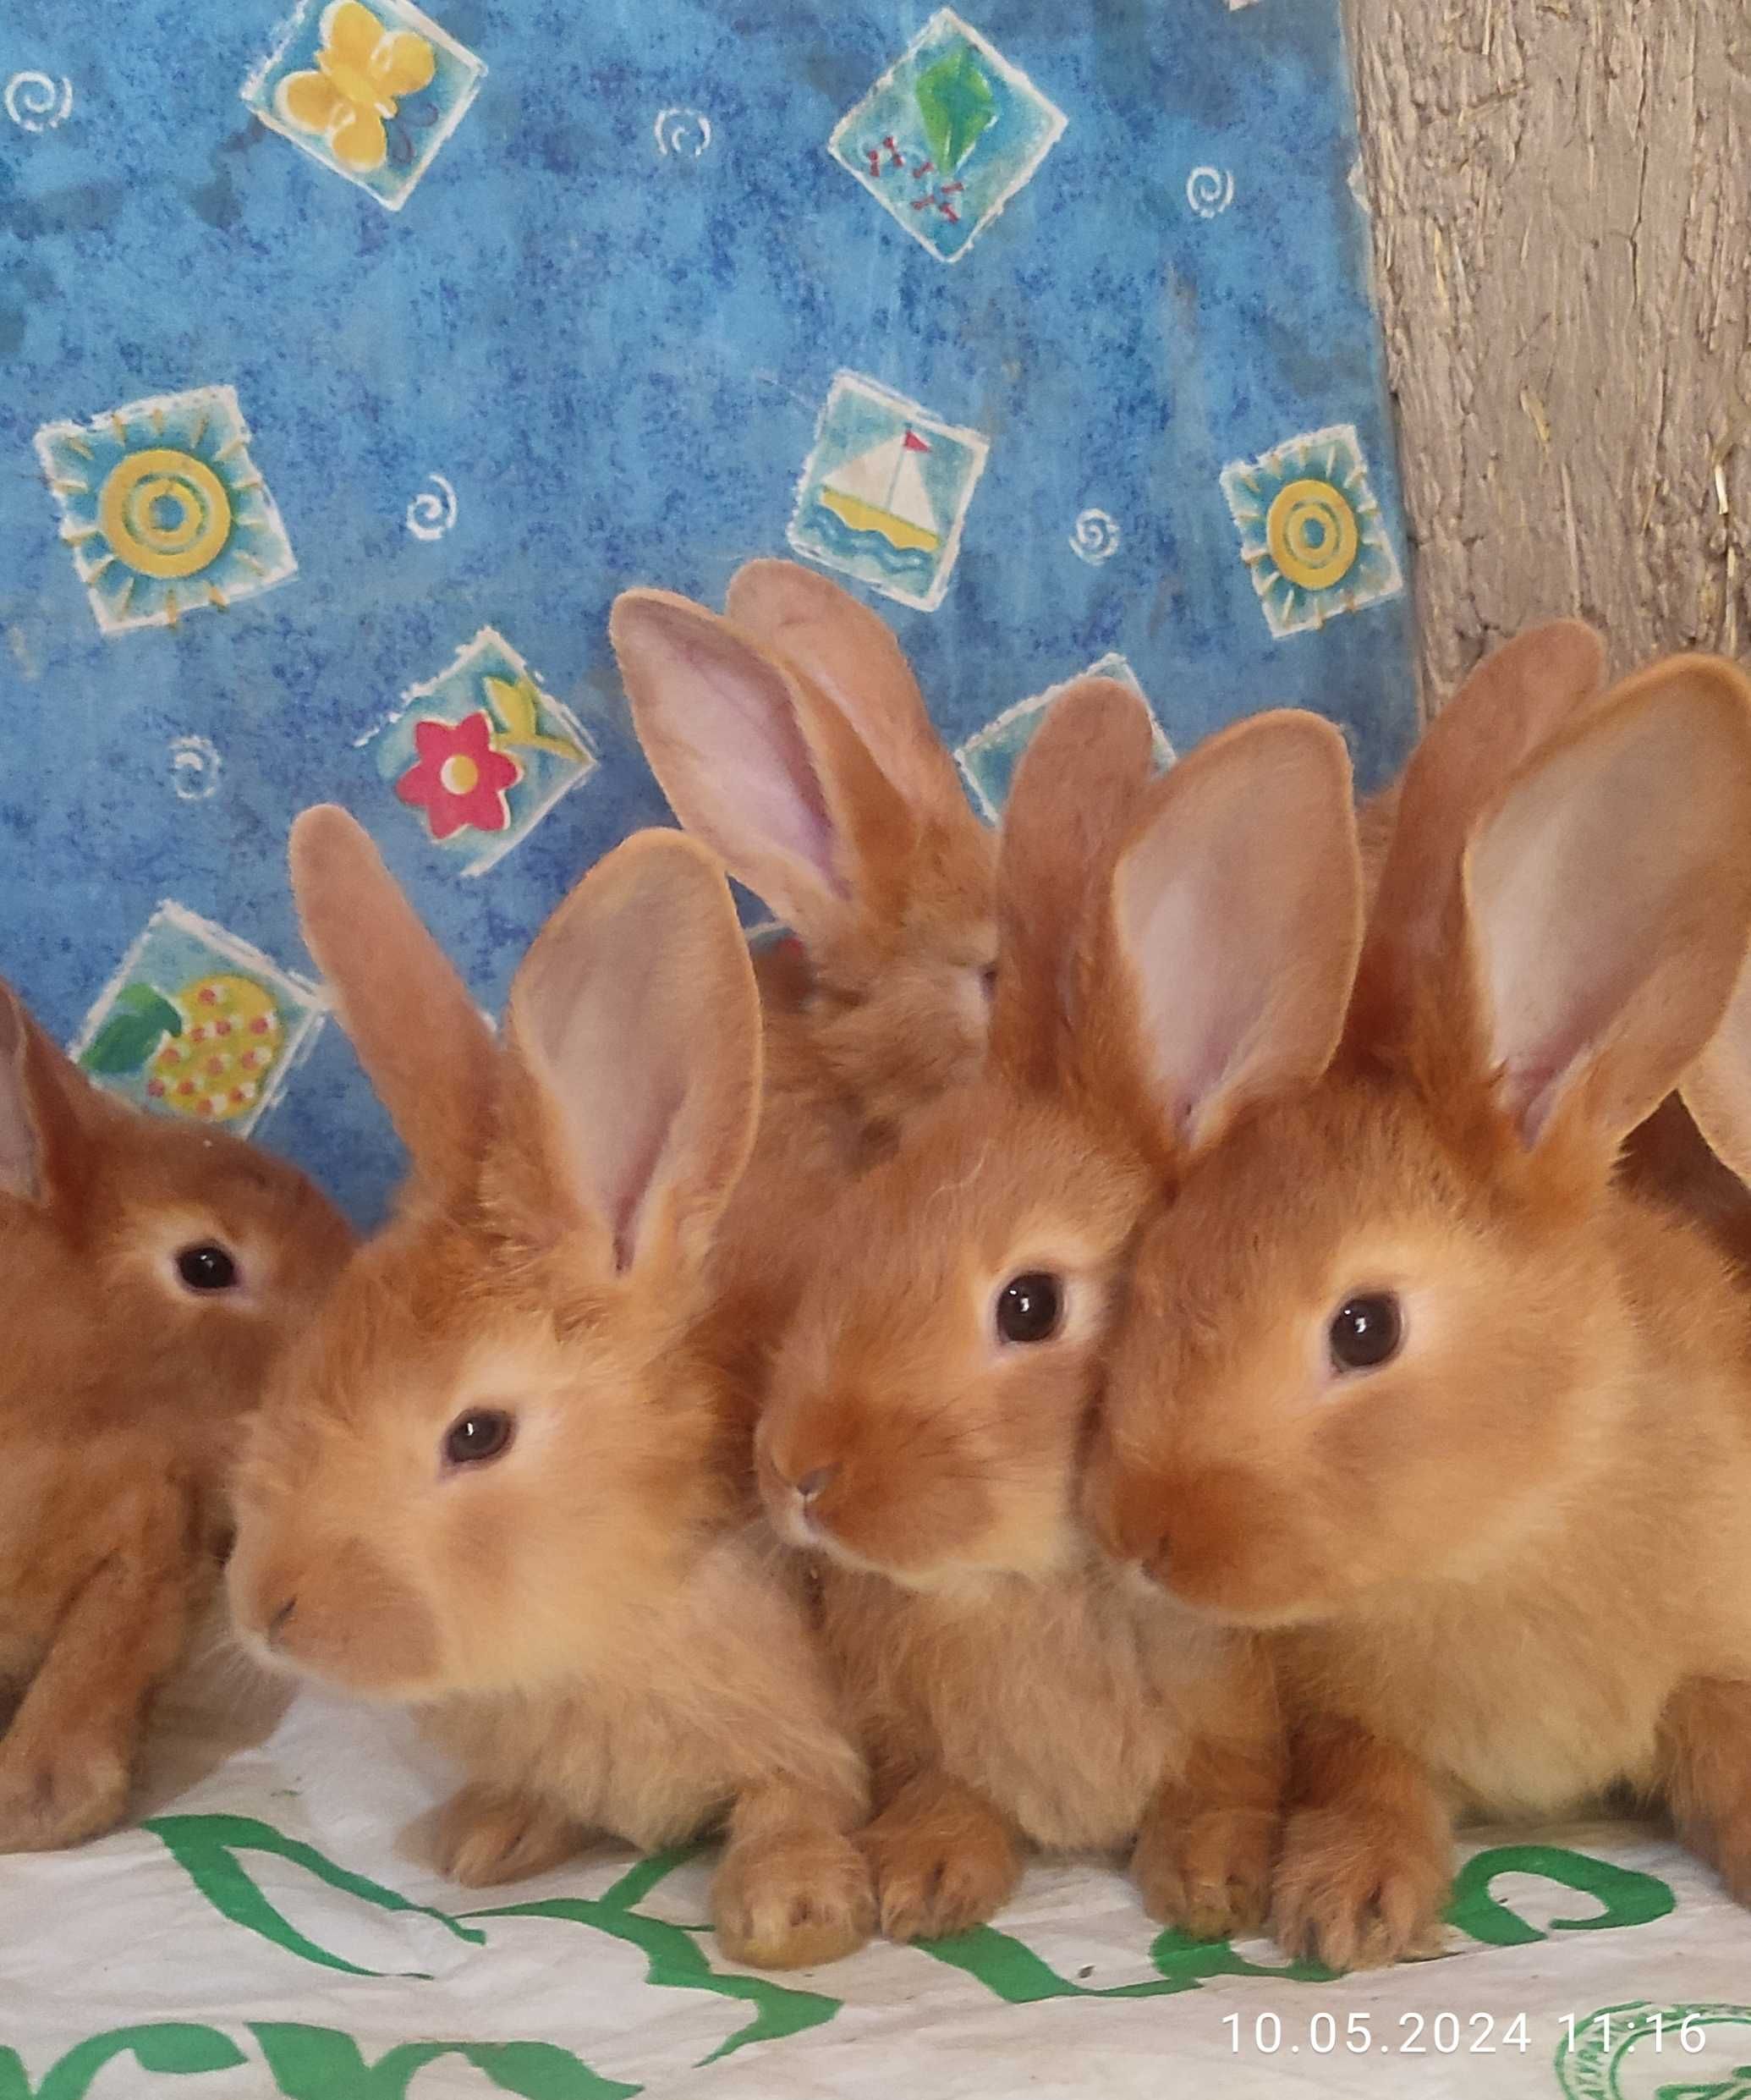 Бургундские кролики от европейских производителей. Куён /Қуён / Quyon